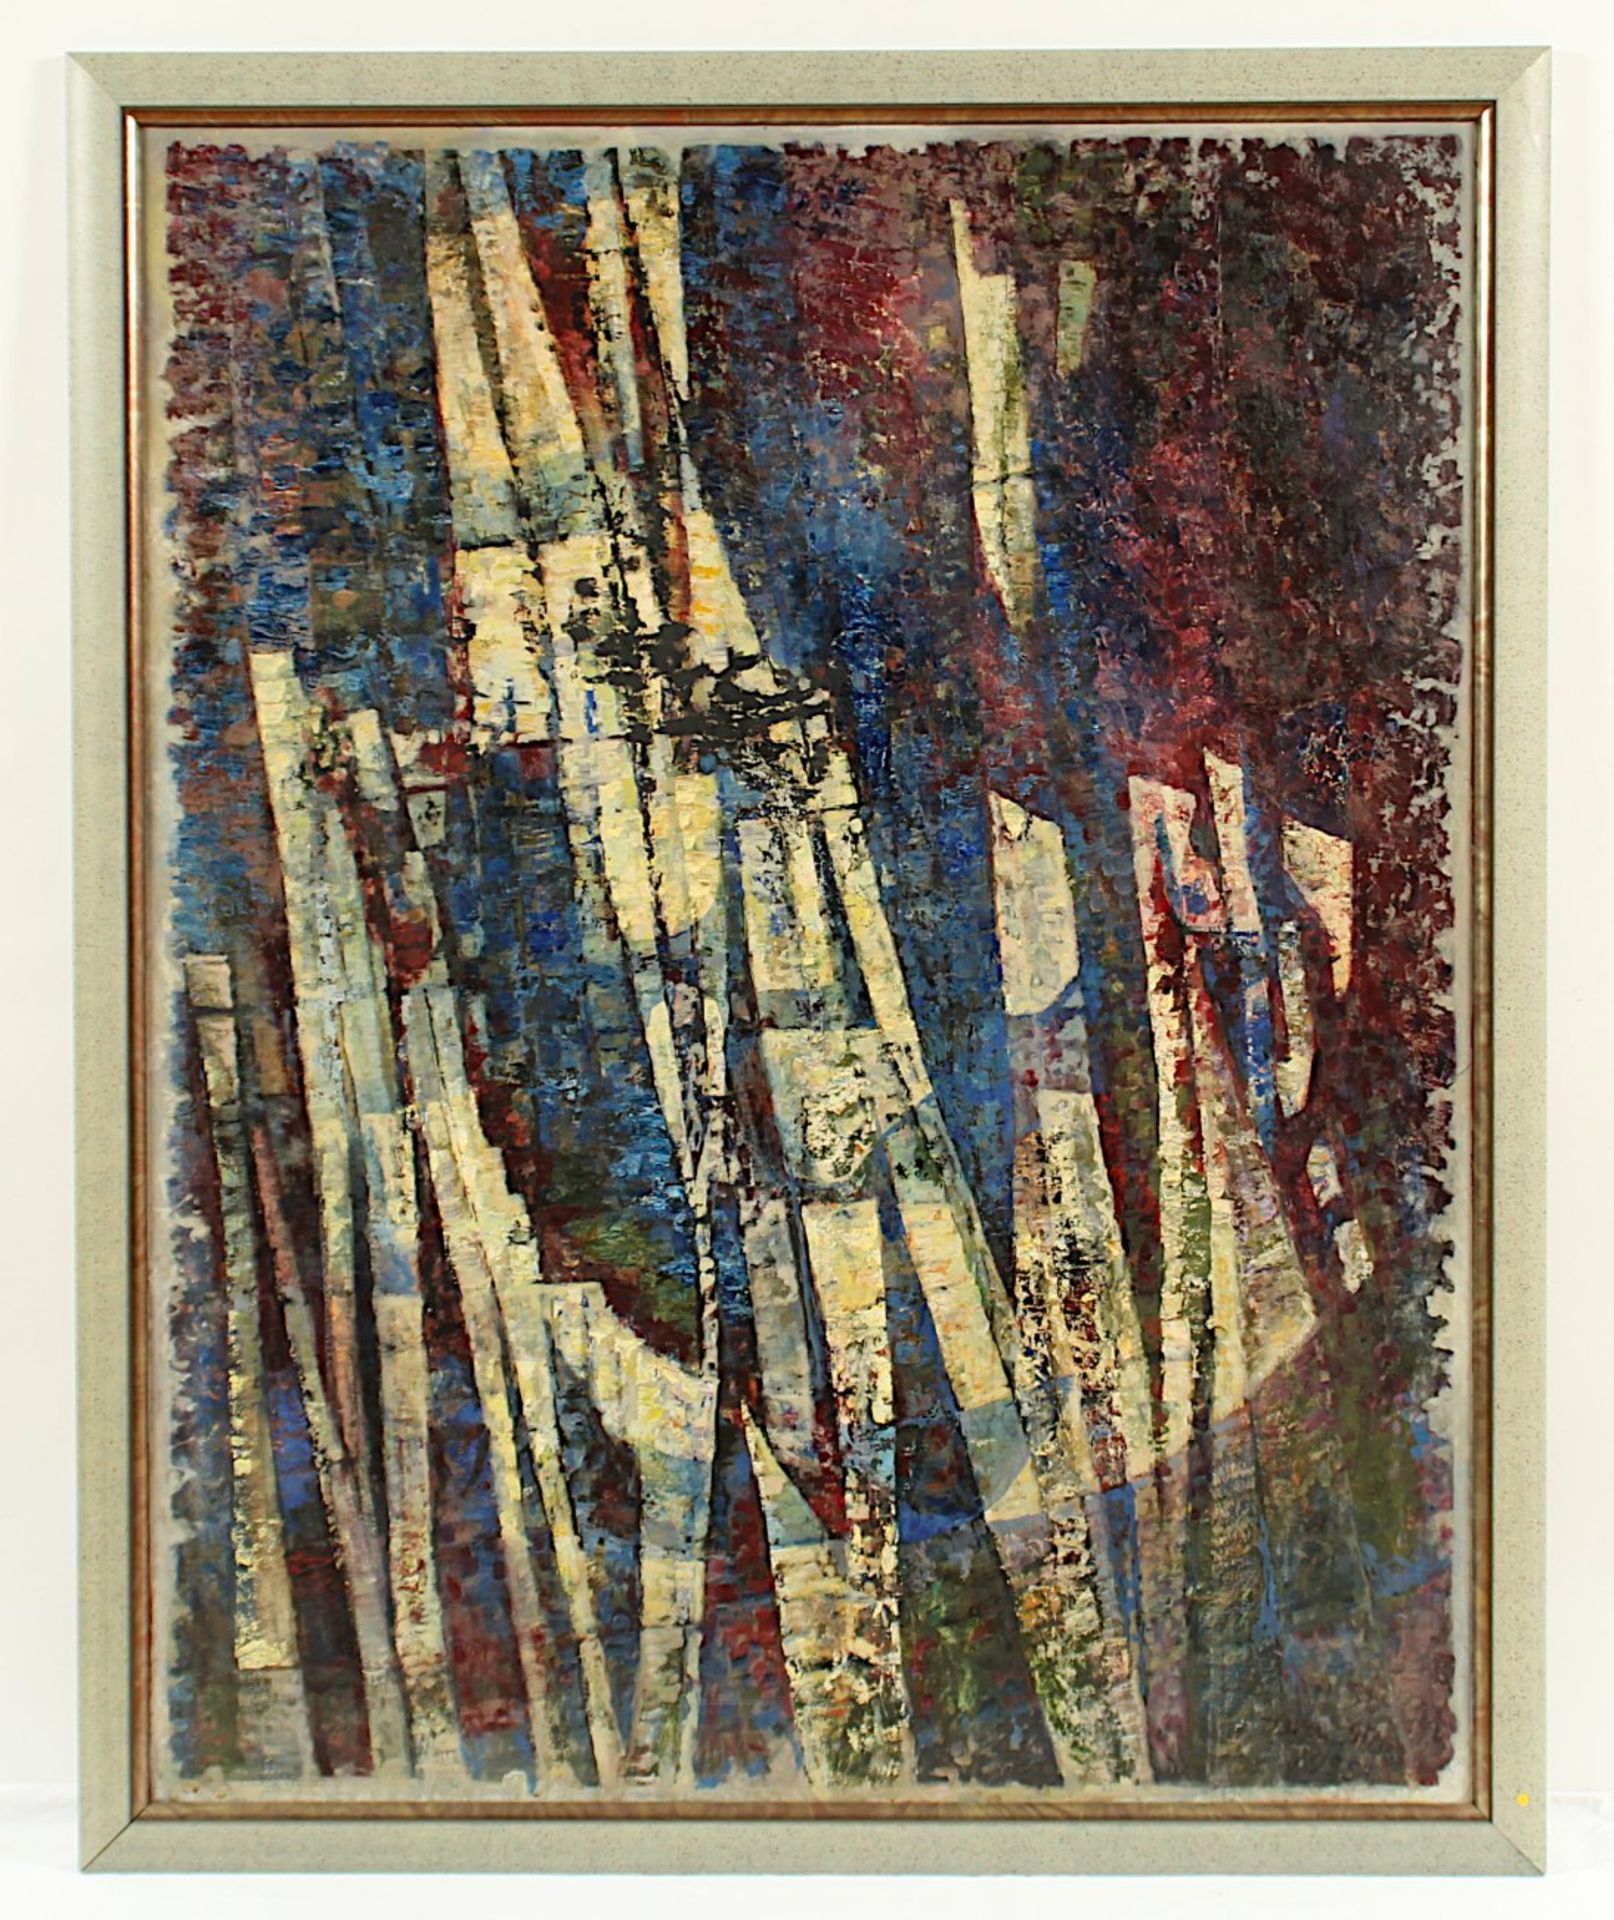 DIENZ, Herm, "Im Halbschatten", Öl/Hartfaser, 118 x 93, unten rechts signiert und datiert, verso